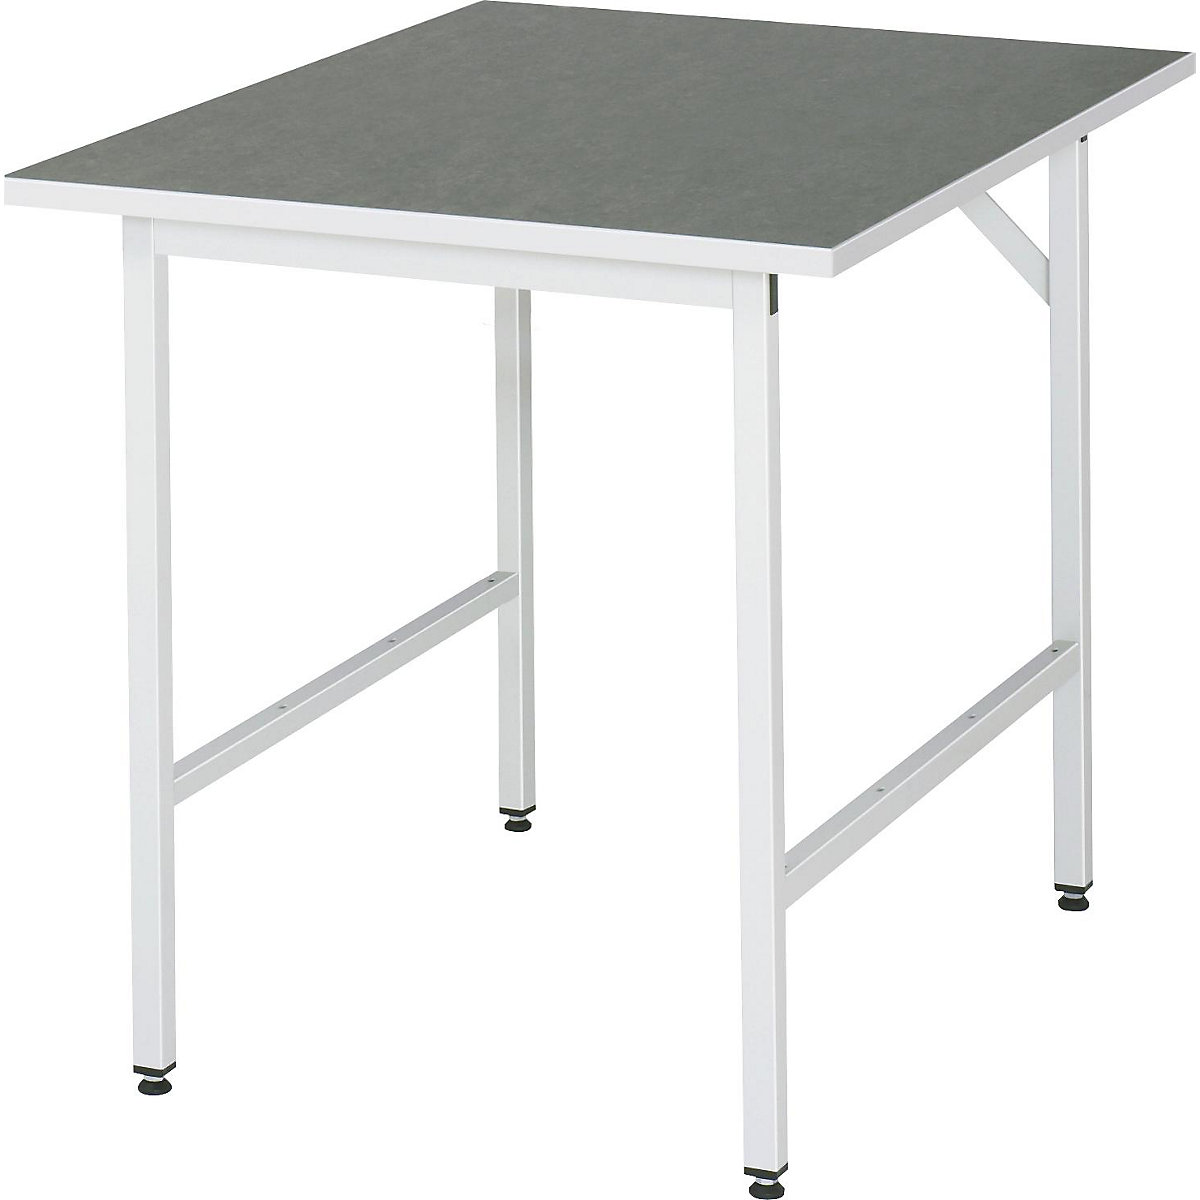 Munkaasztal, állítható magasságú – RAU, 800 – 850 mm, linóleum lap, szé x mé 750 x 1000 mm, világosszürke-15